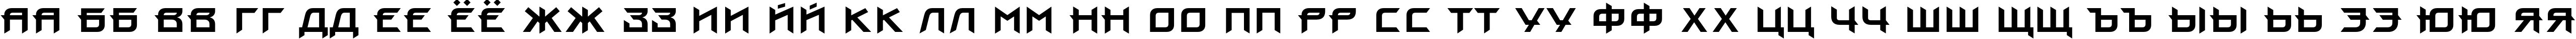 Пример написания русского алфавита шрифтом ProunC Bold